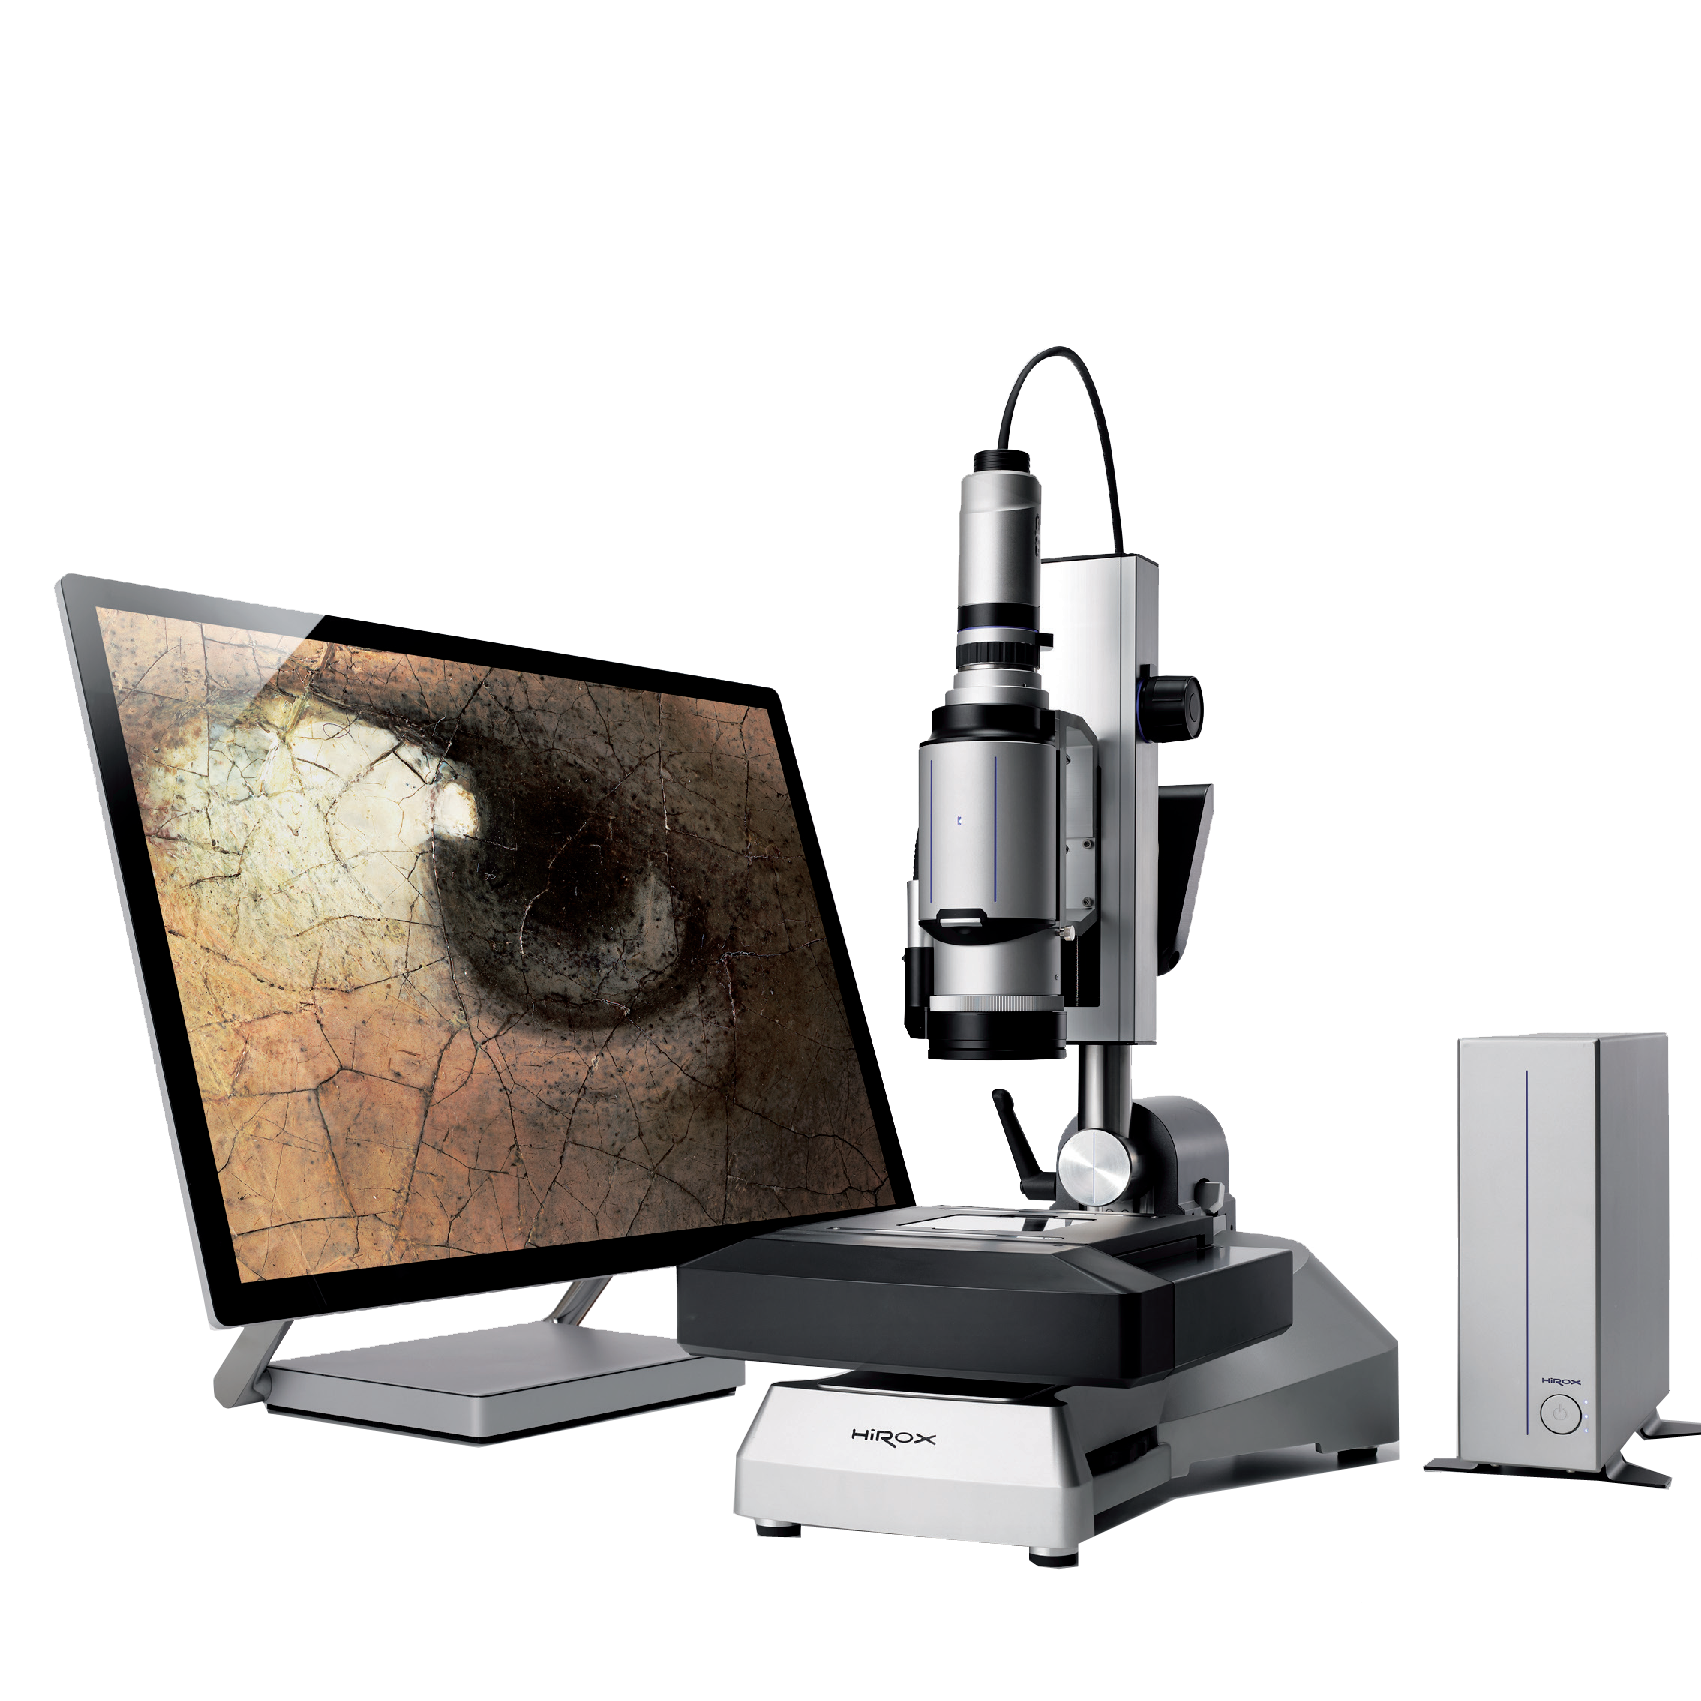 日本浩视三维数字视频显微镜 日本进口显微镜 日本浩视显微镜价格 福建代理浩视显微镜价格 HIROX显微镜 HRX-01 